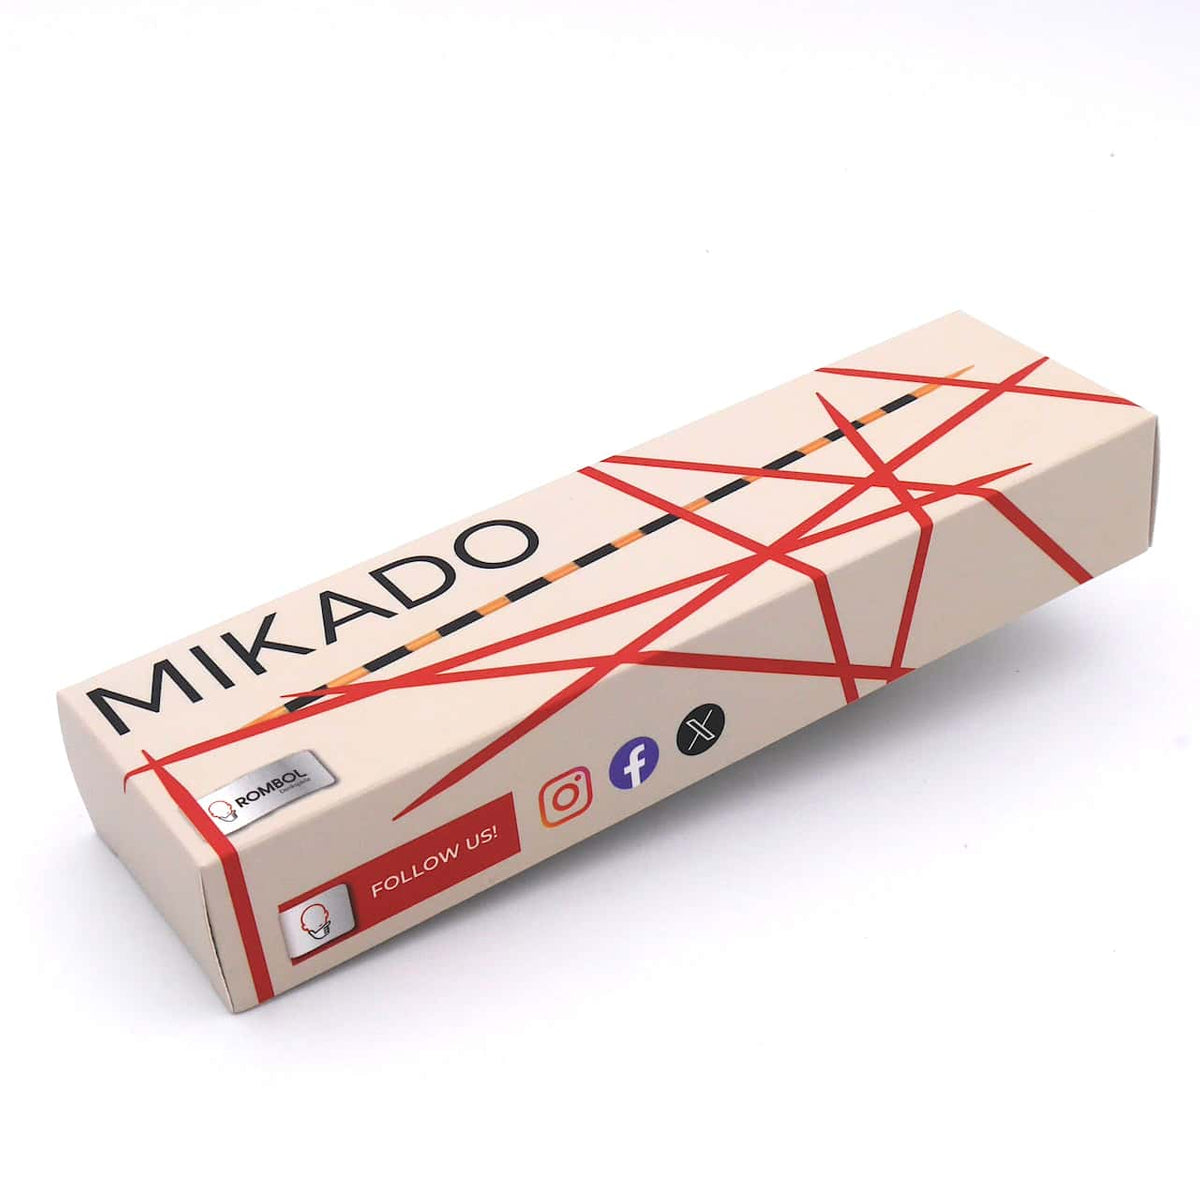 Ein traditionelles Mikado-Spiel, das auf einem Holztisch ausgelegt ist, wobei die farbigen Stäbchen ein chaotisches Muster bilden.